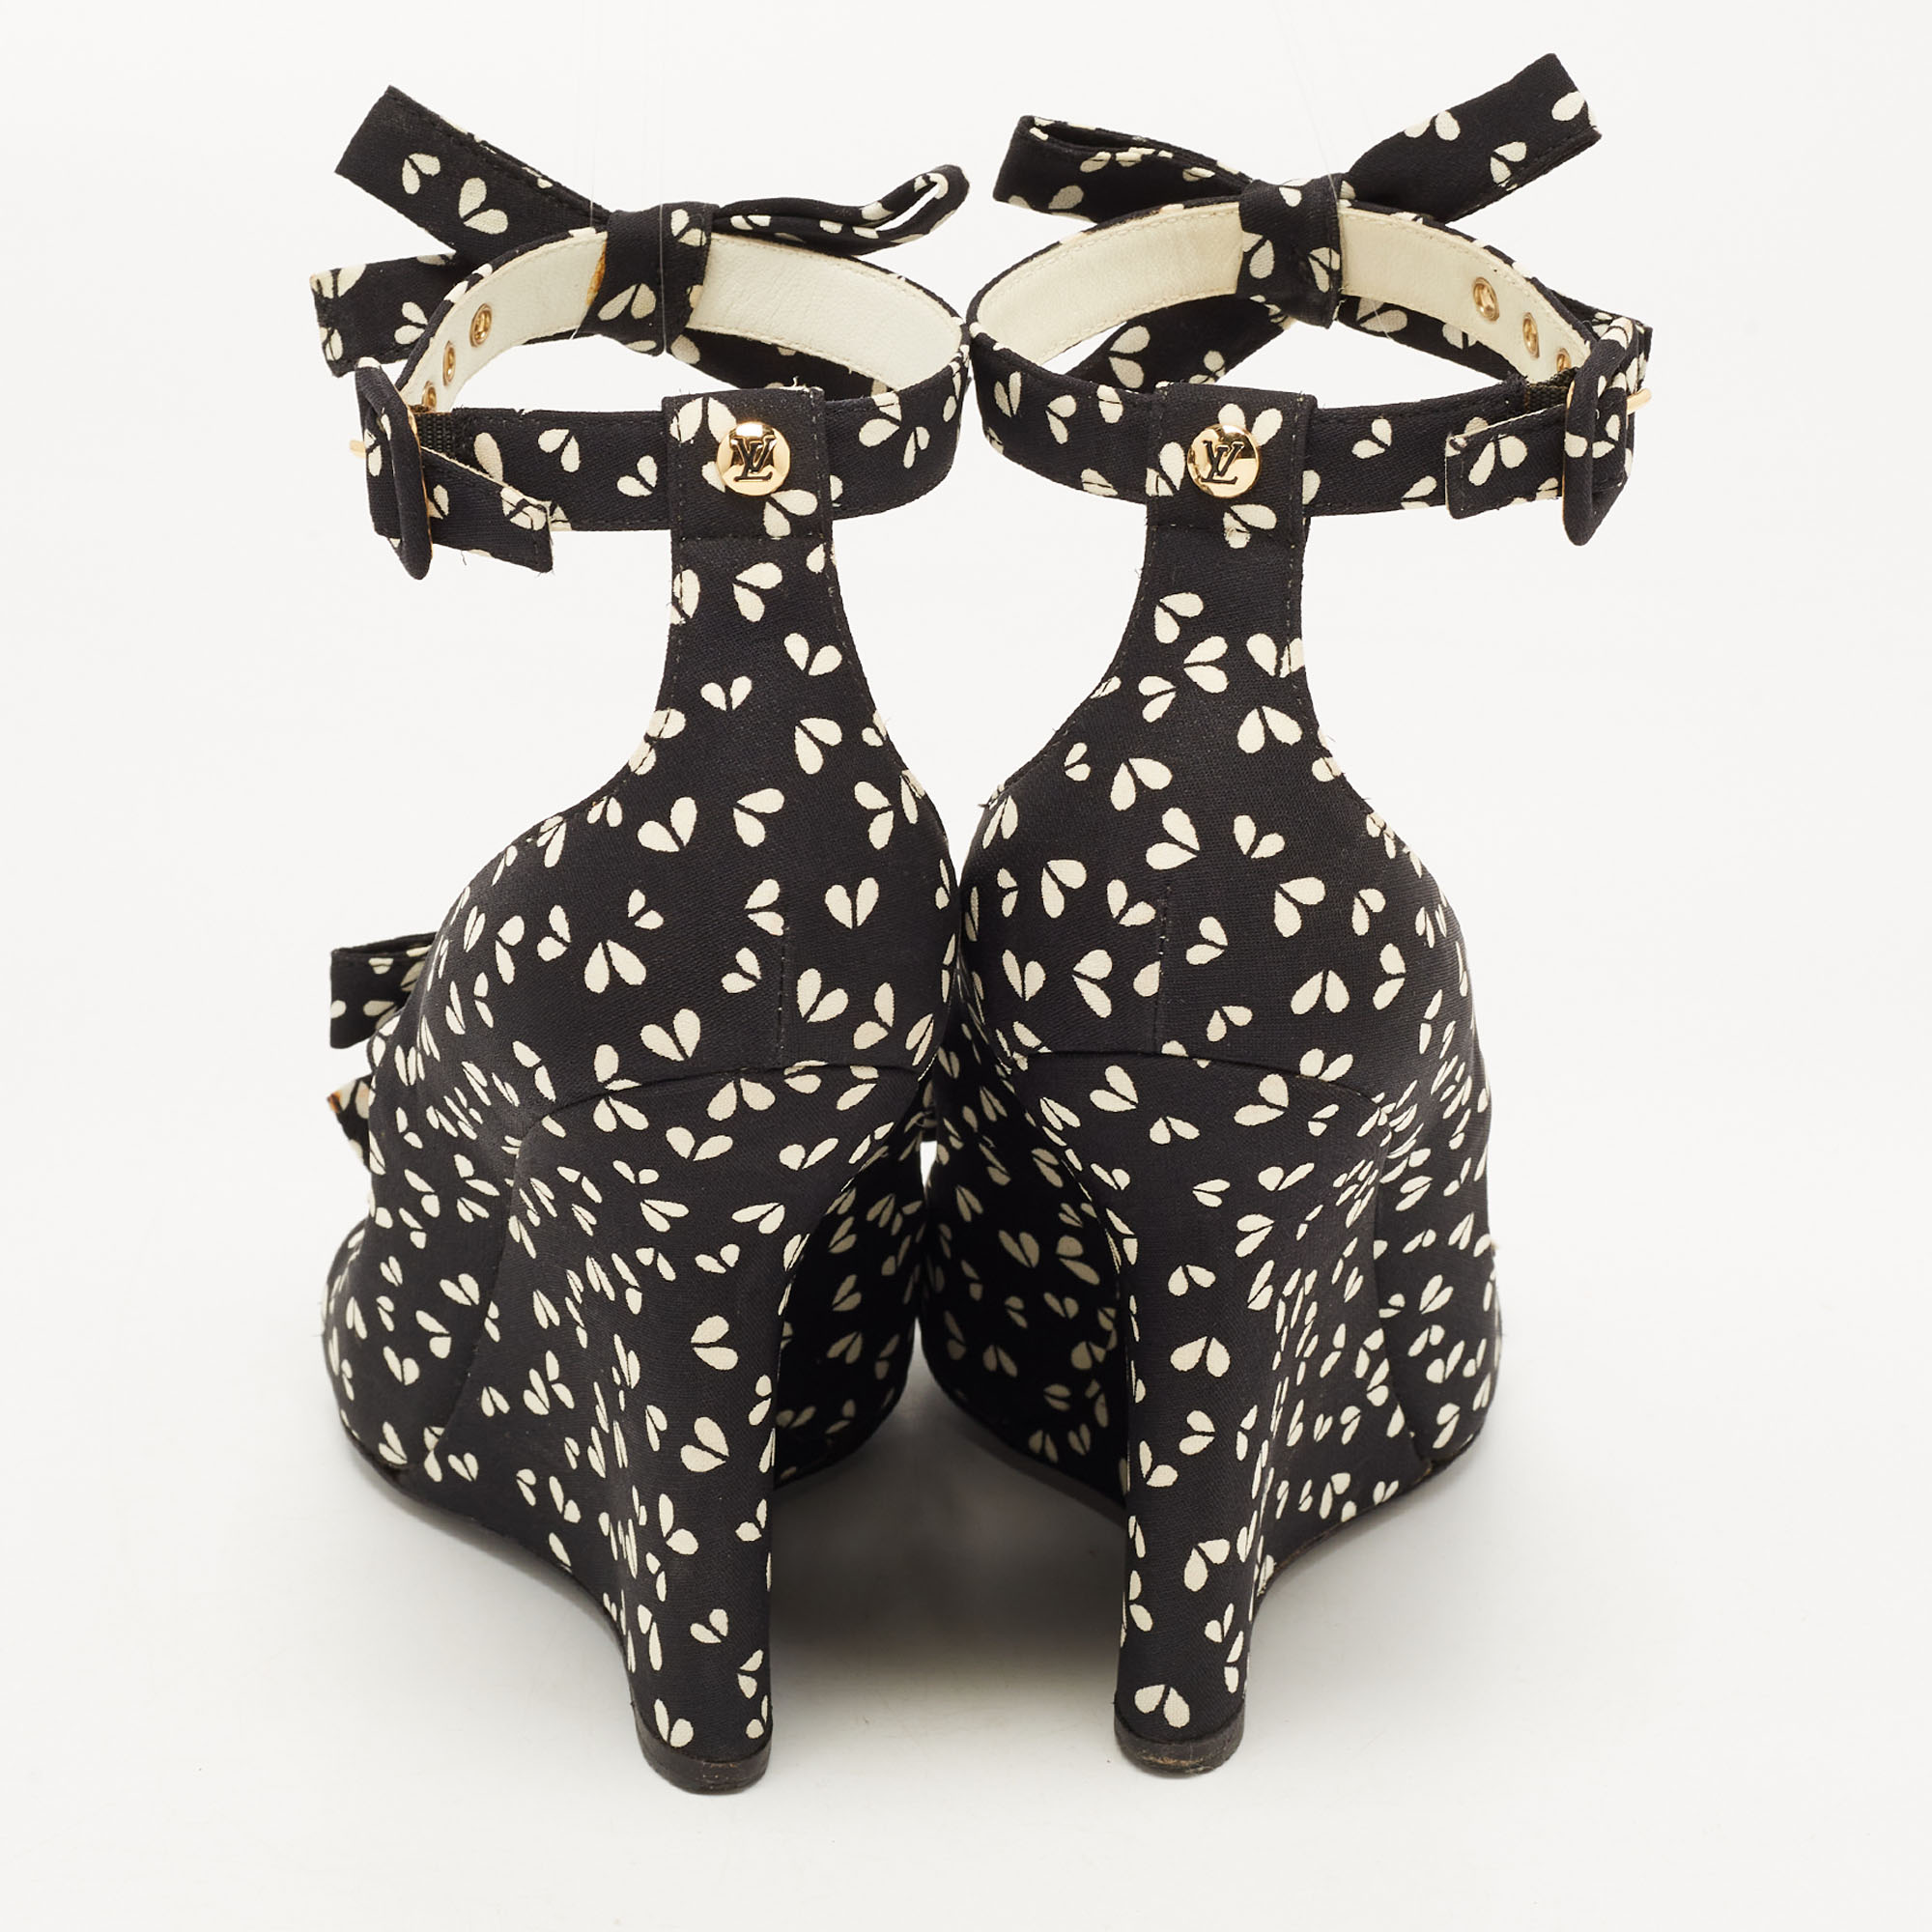 Louis Vuitton Black Canvas  Bow Ankle Strap Sandals Size 38.5